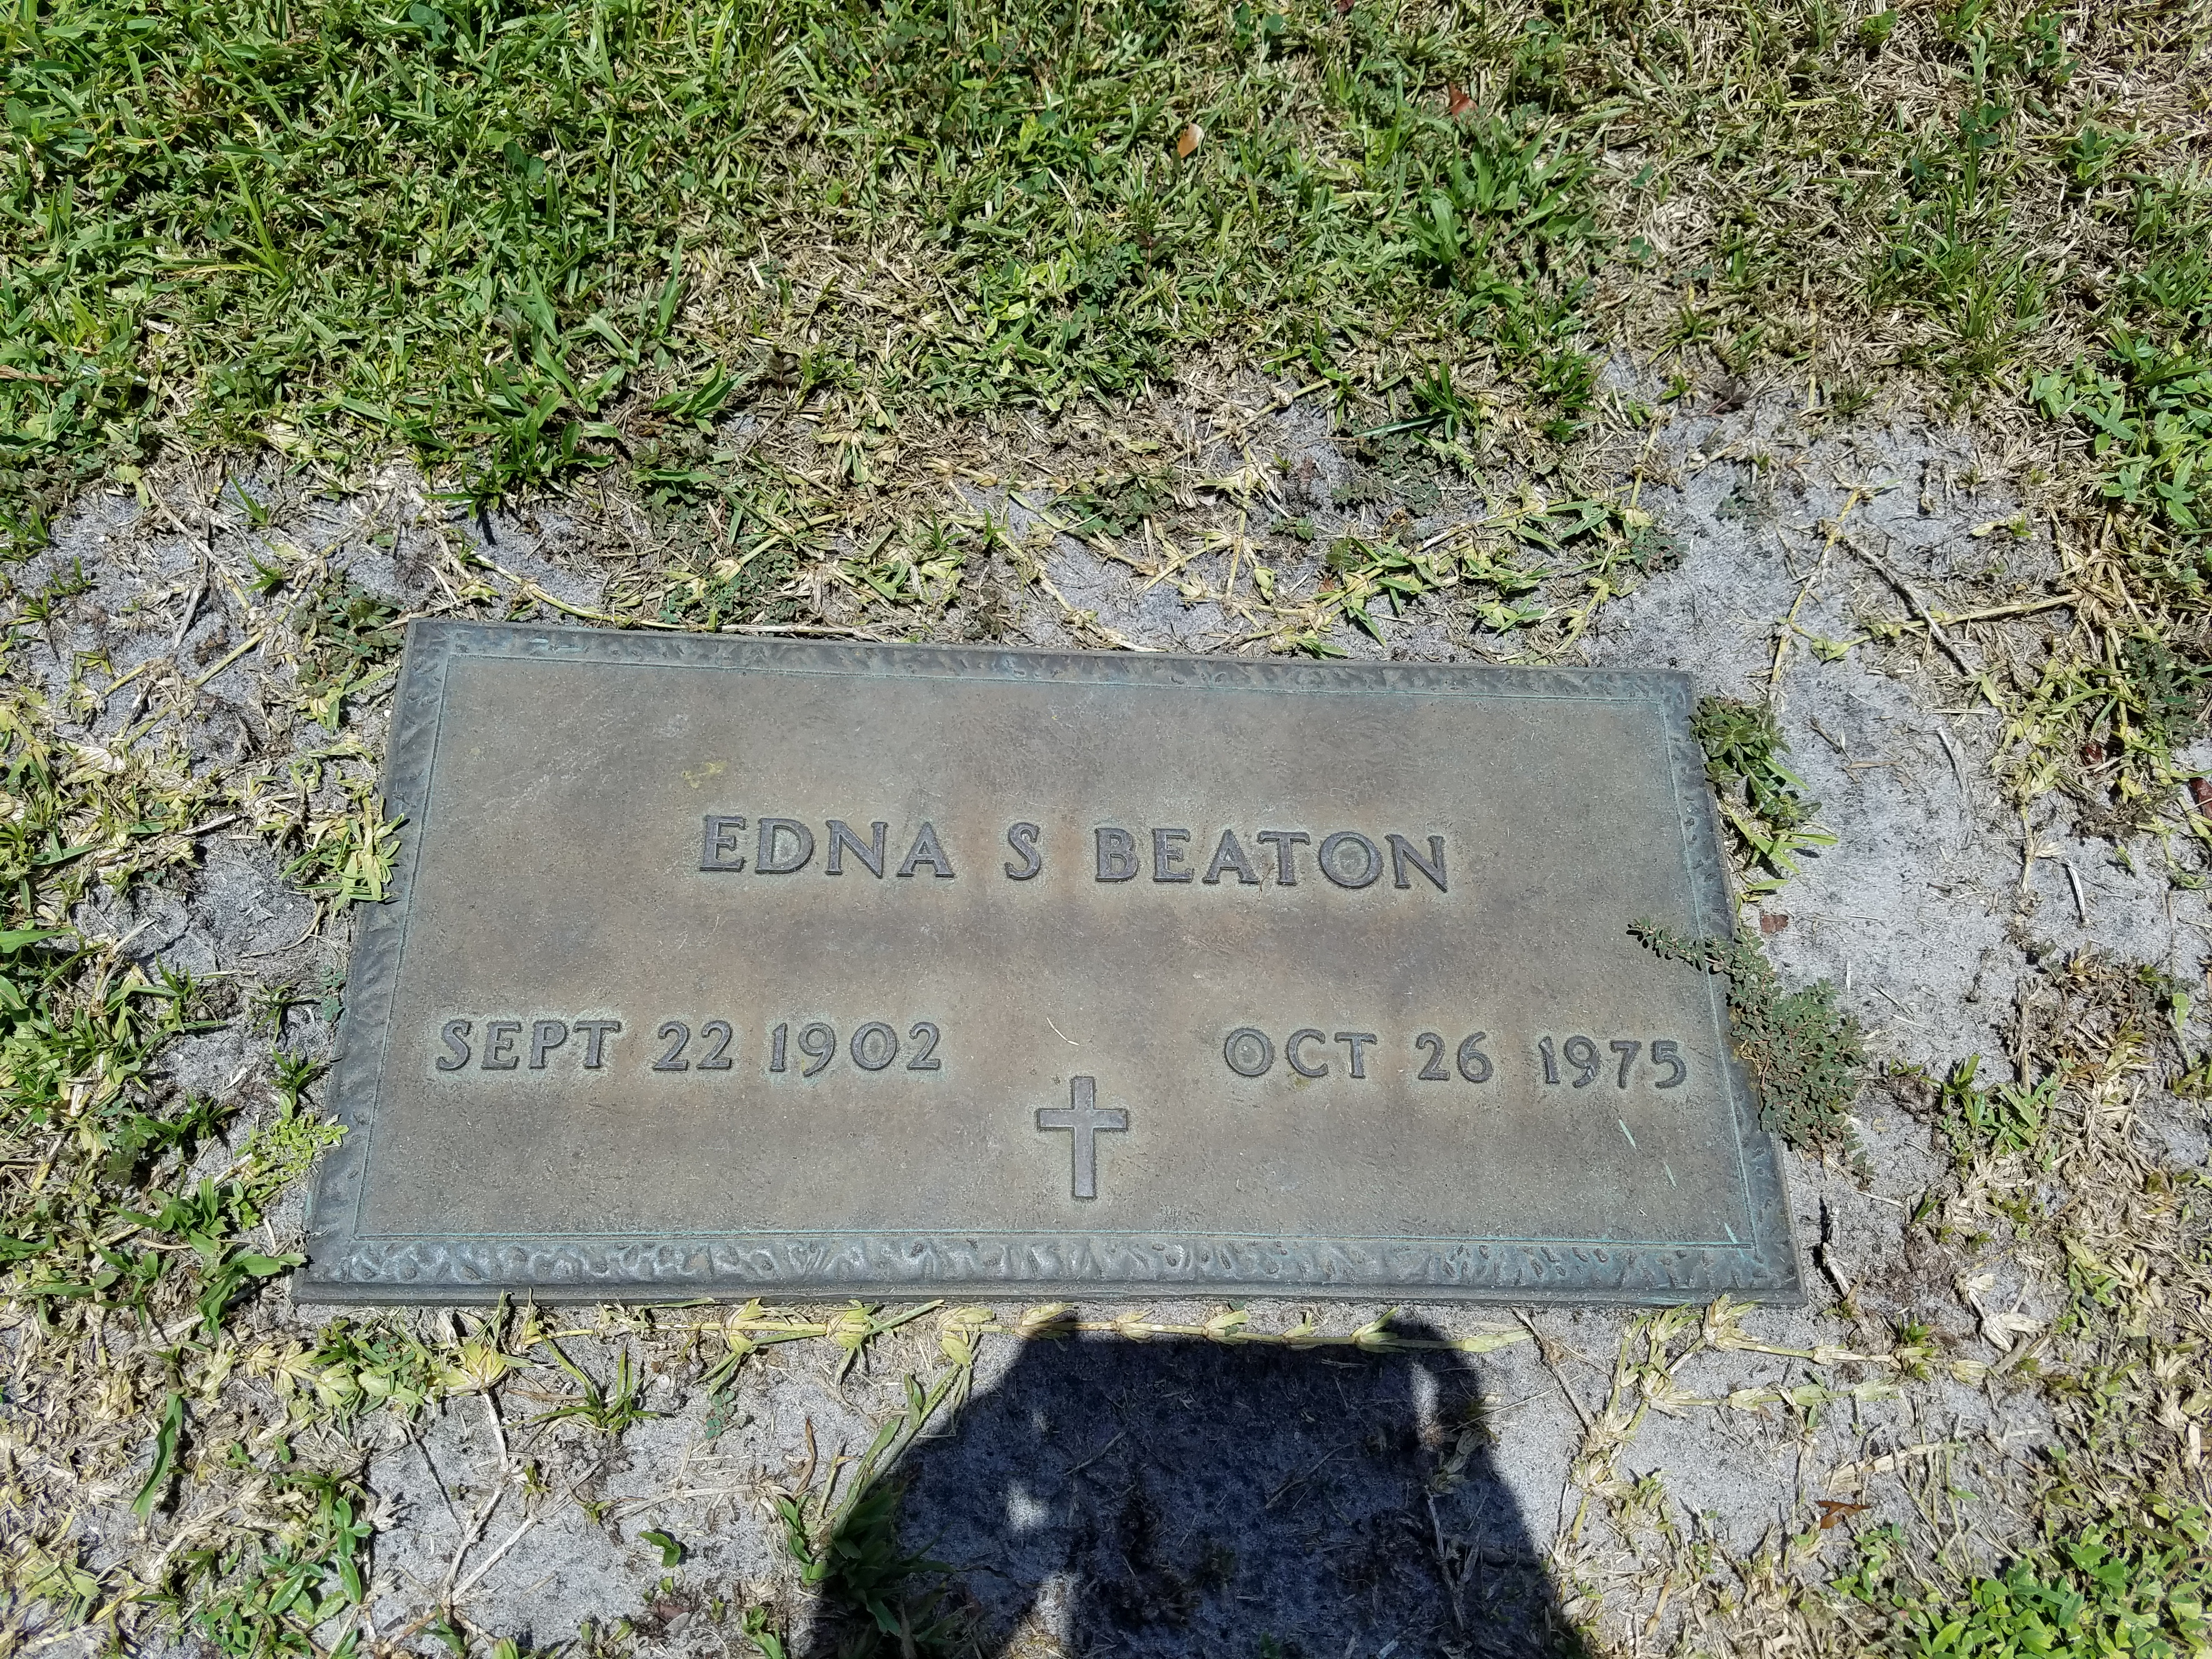 Edna S Beaton